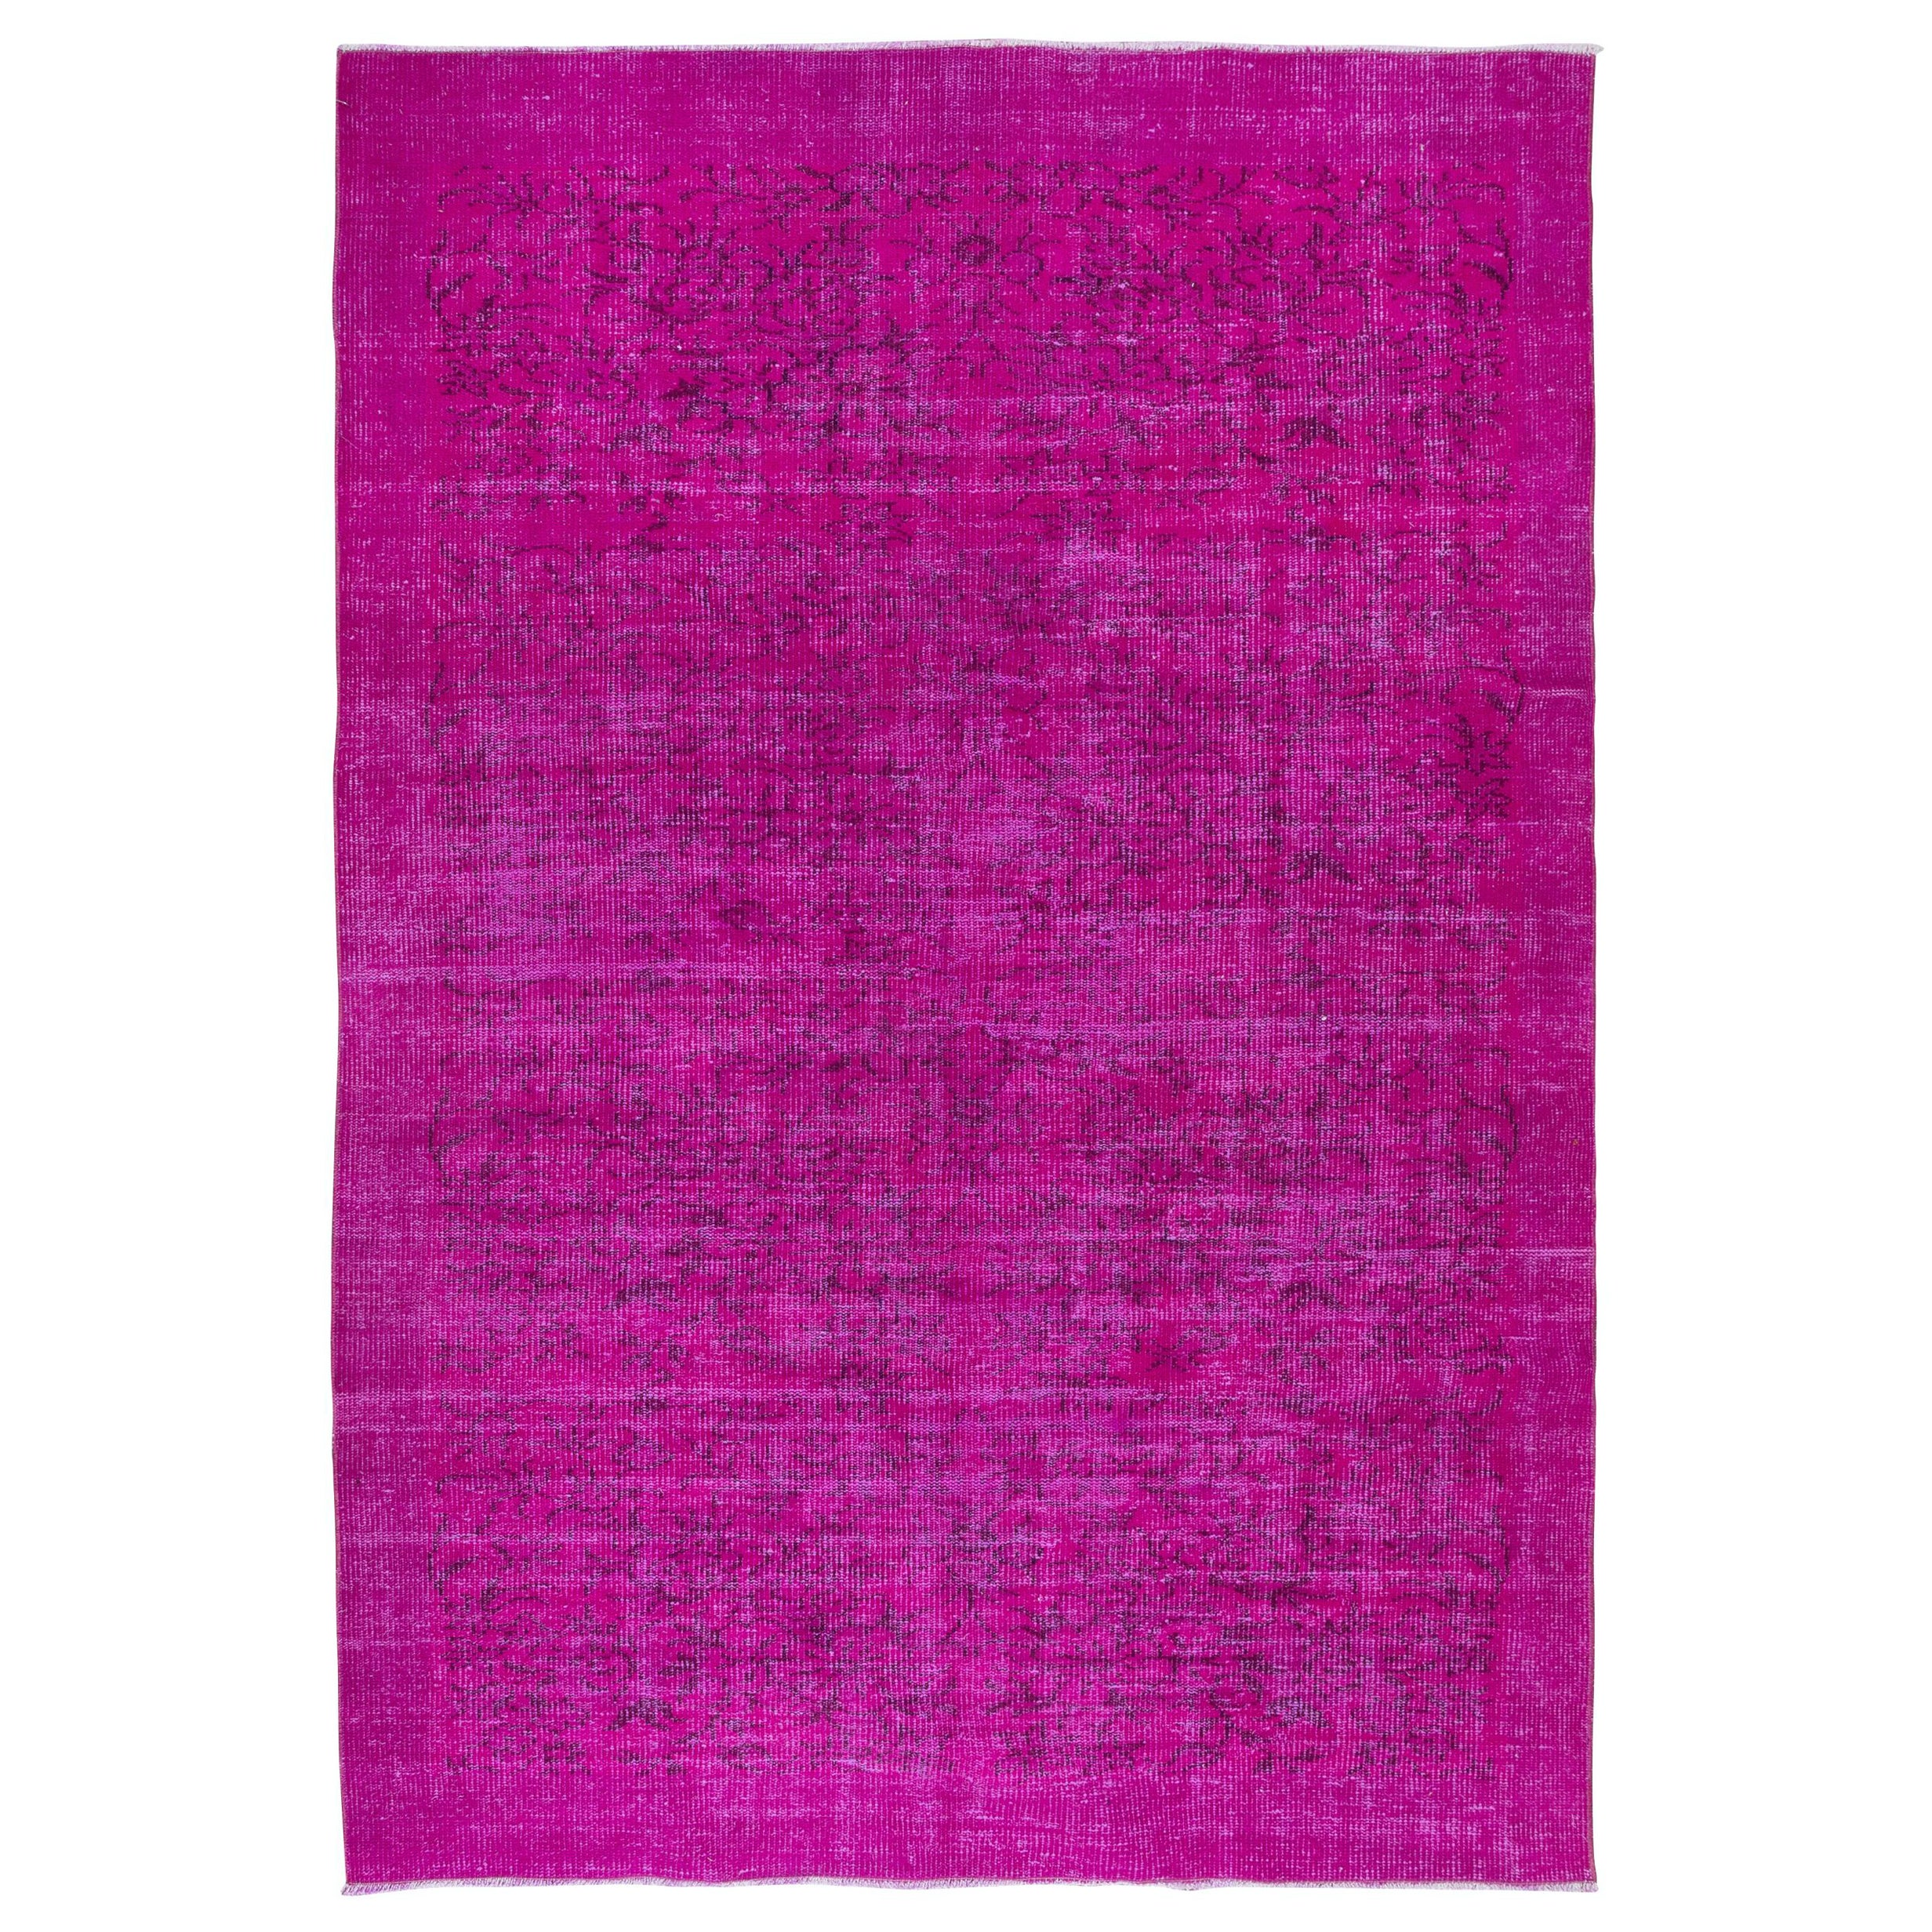 5.8x8.6 Ft Handgefertigter türkischer geblümter Teppich mit heißem rosa Hintergrund und massiver Bordüre